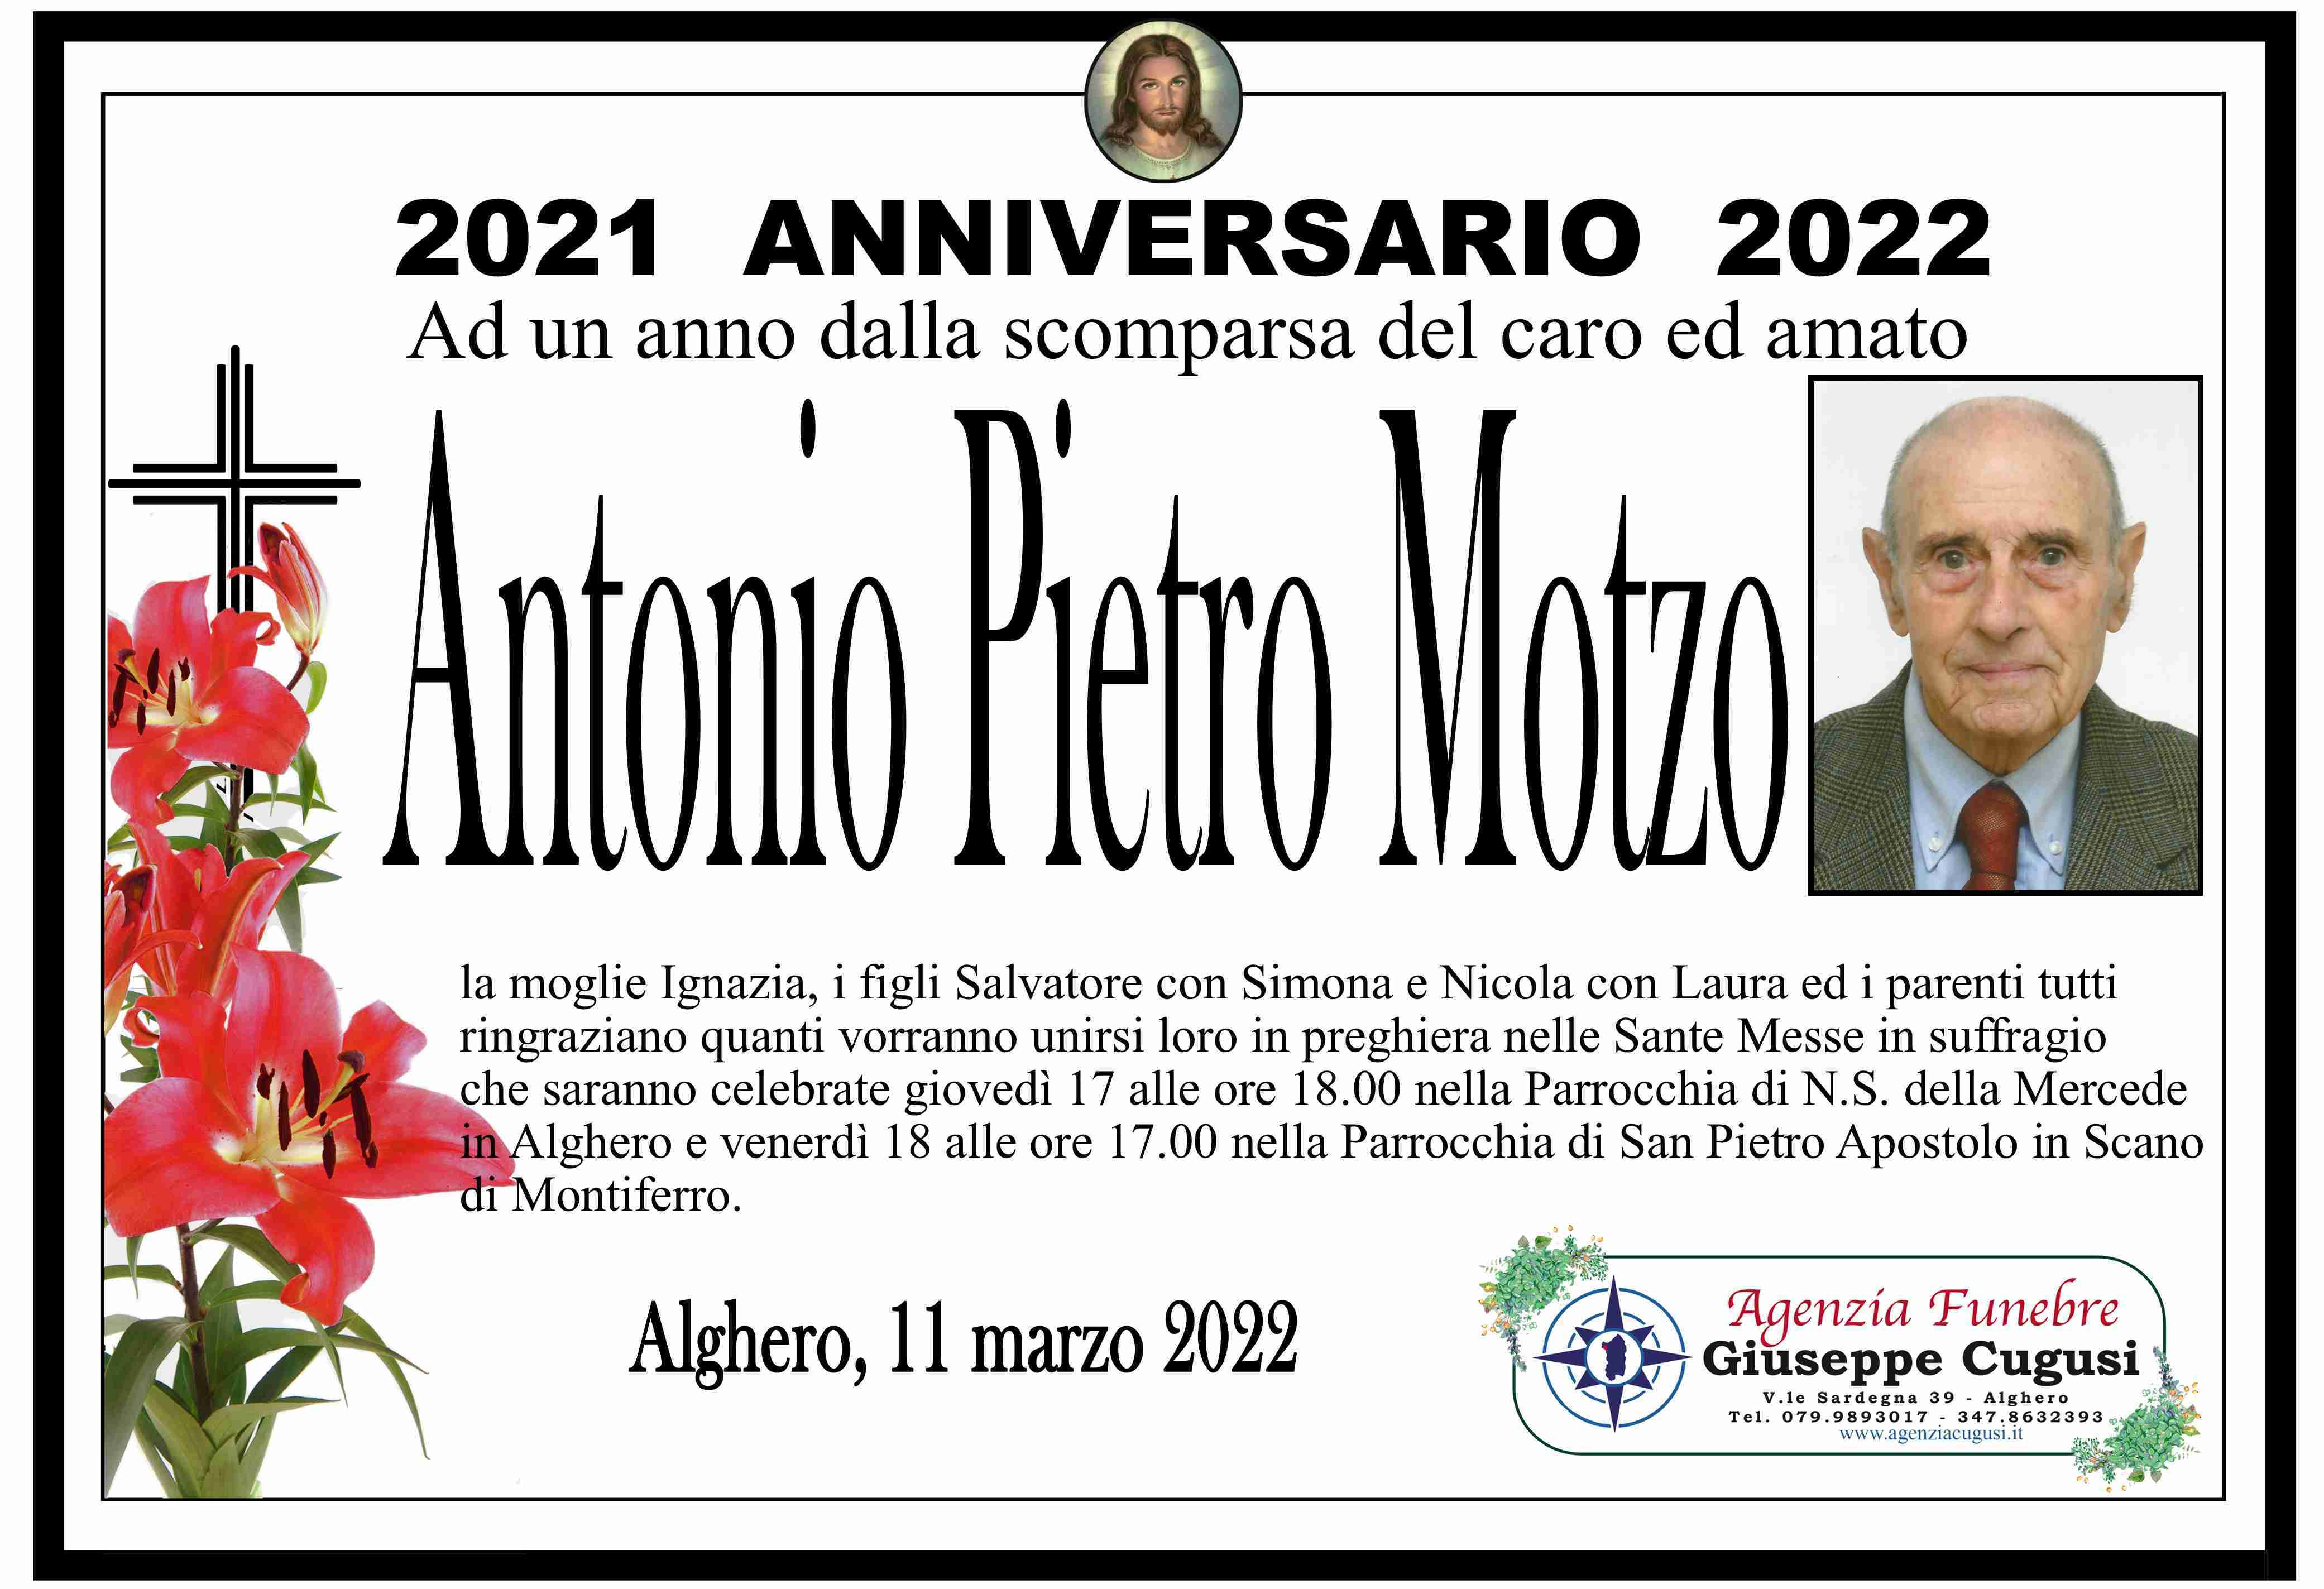 Antonio Pietro Motzo